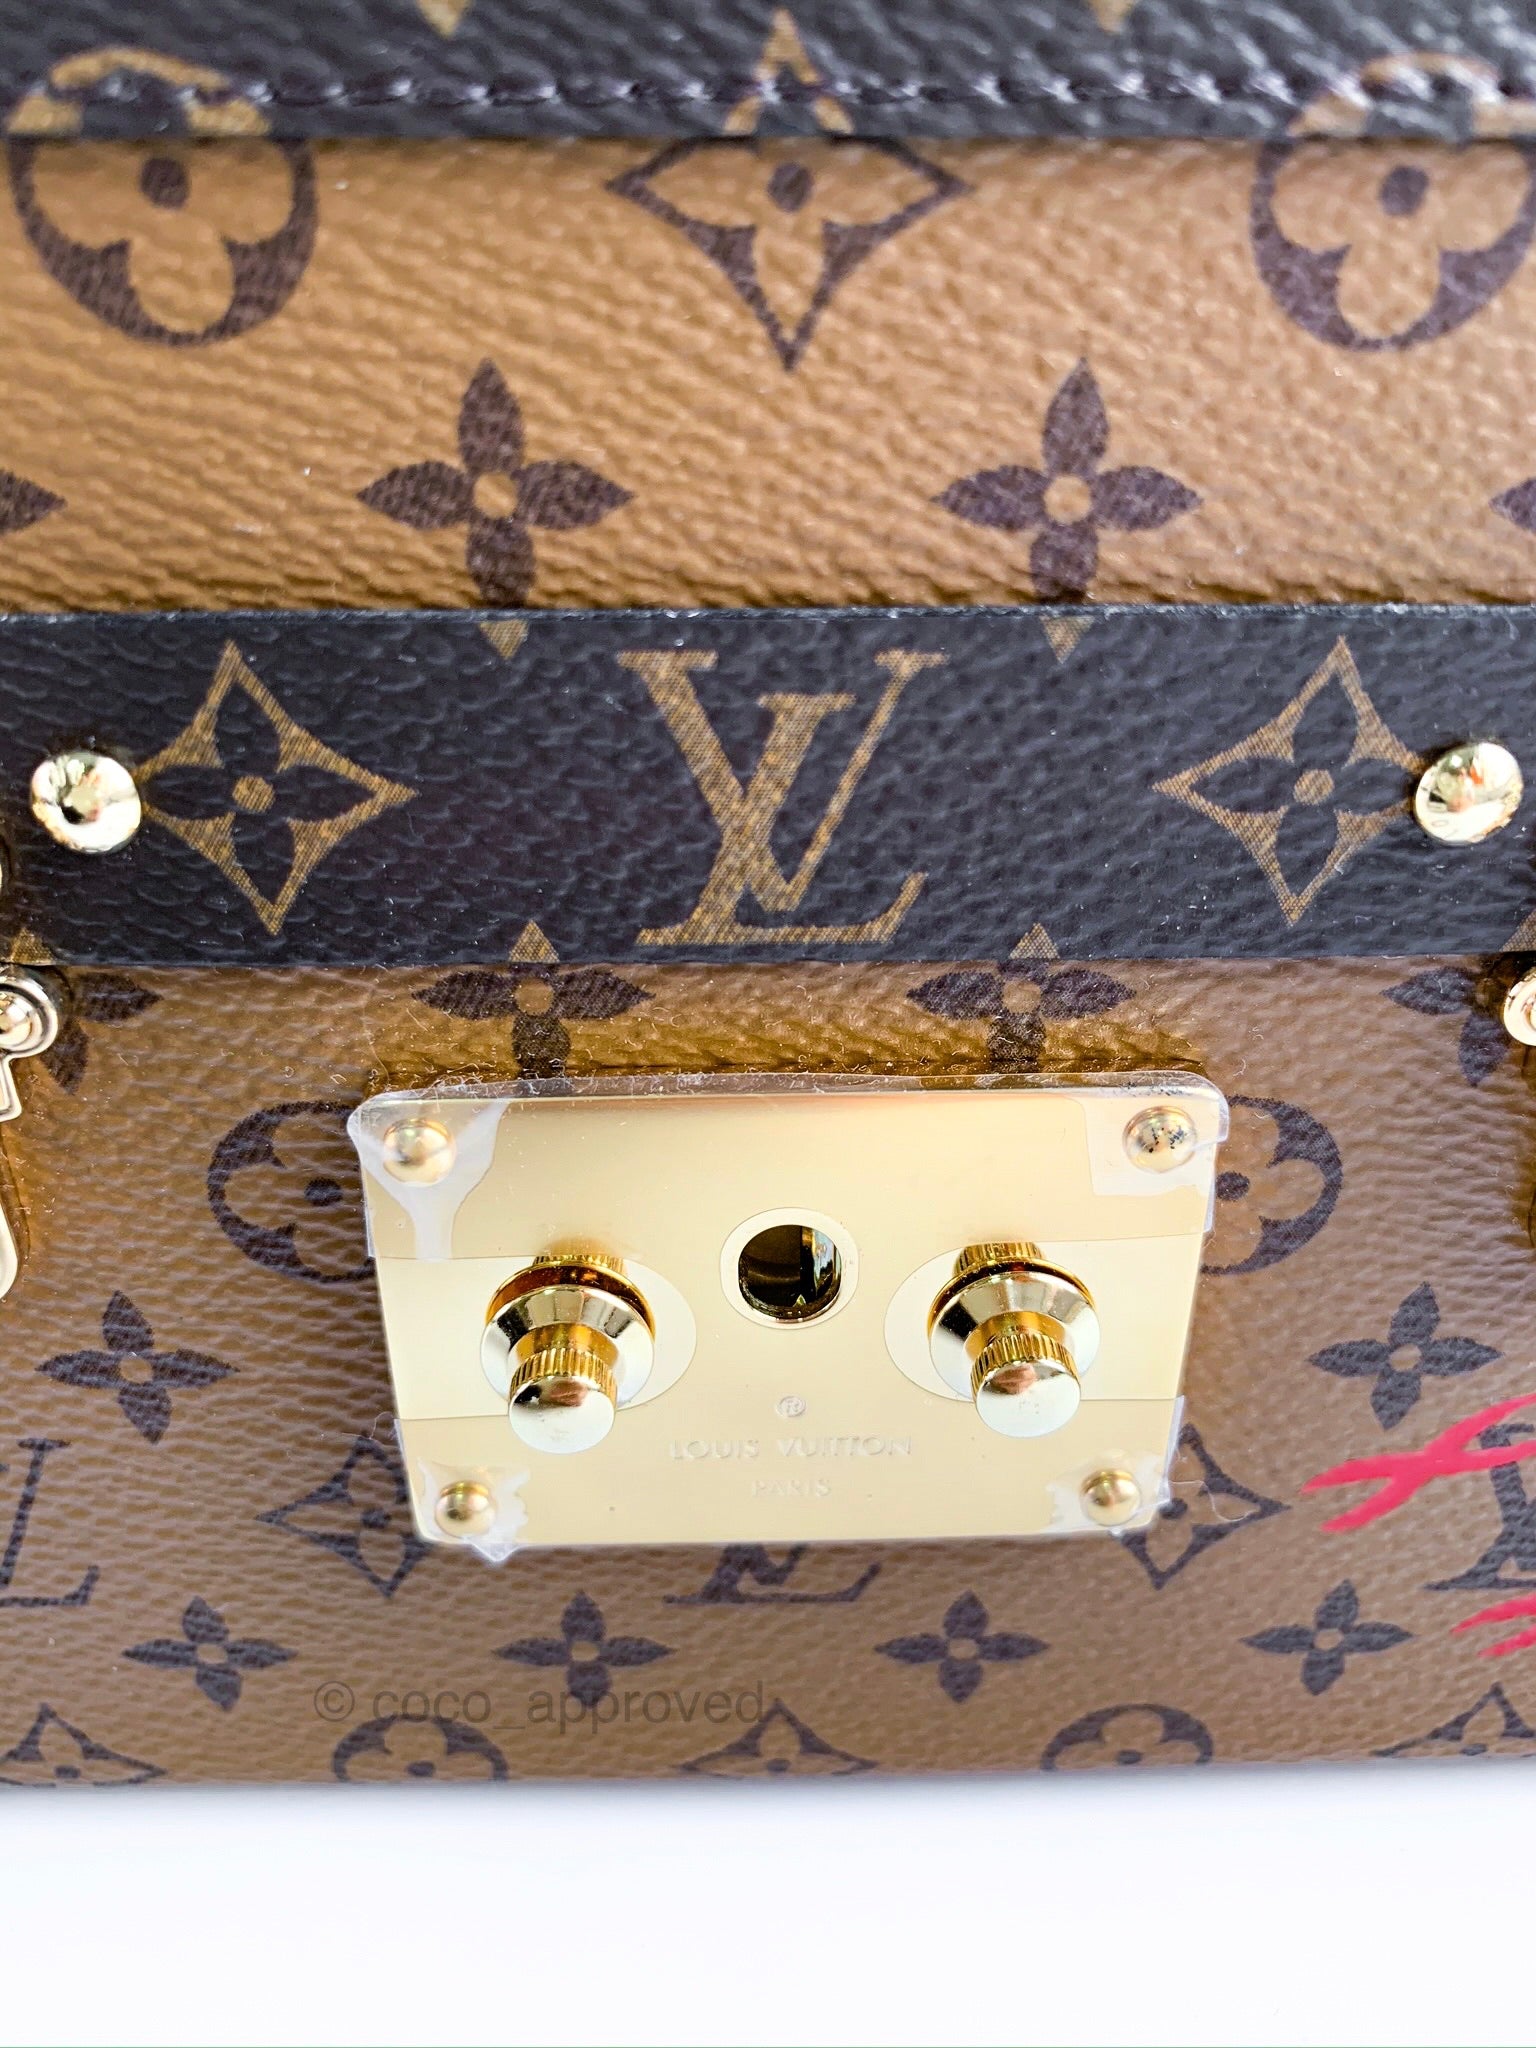 Louis Vuitton Petite Malle Review + Mod Shots, Reverse Monogram, LV Zoe  Wallet